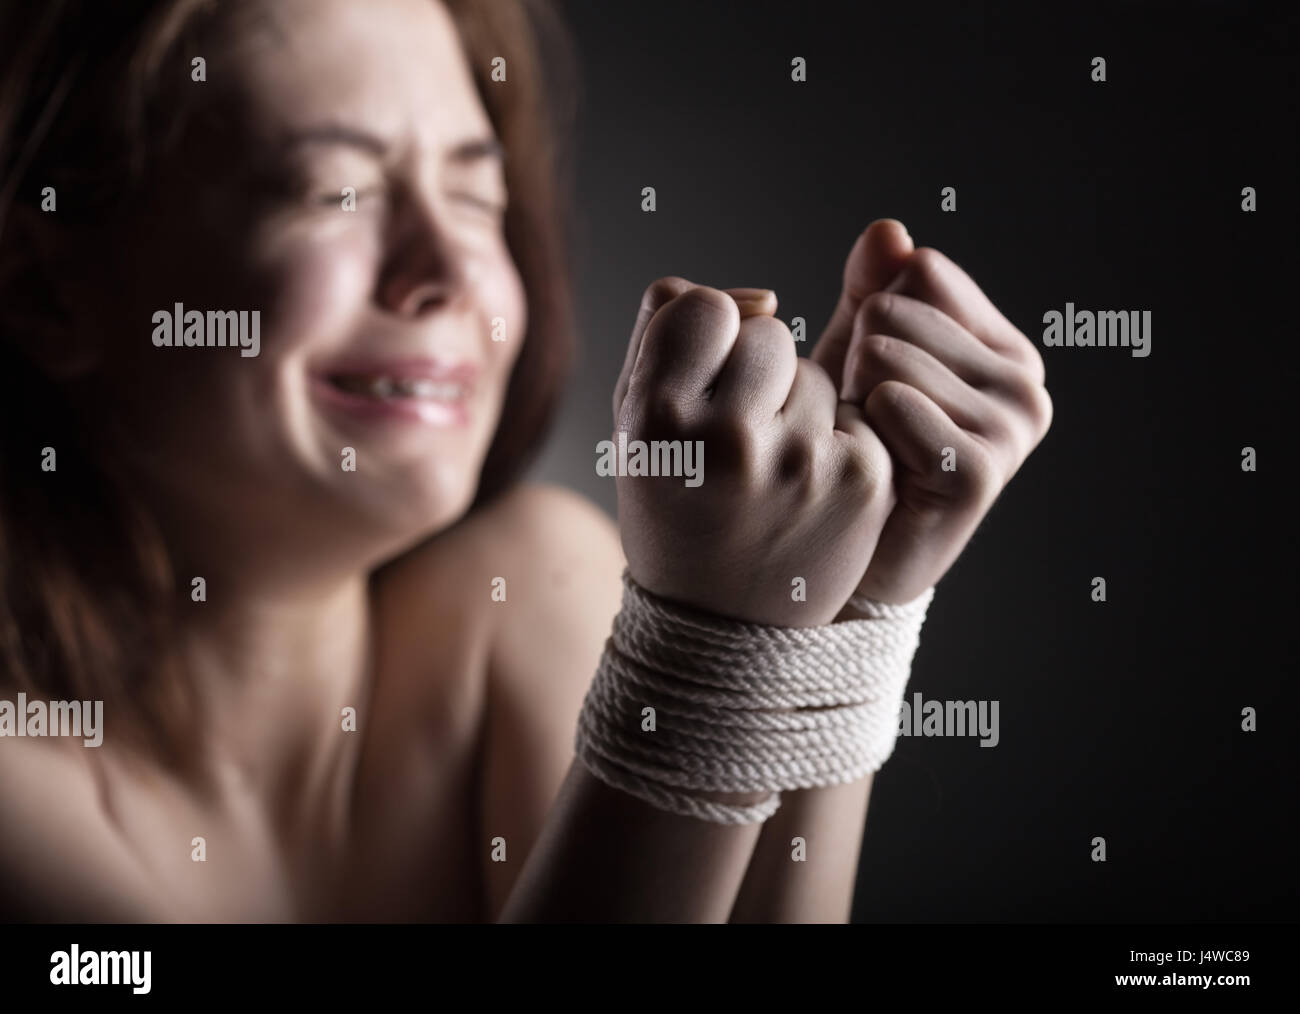 Frau Opfer von häuslicher Gewalt und Missbrauch Stockfoto